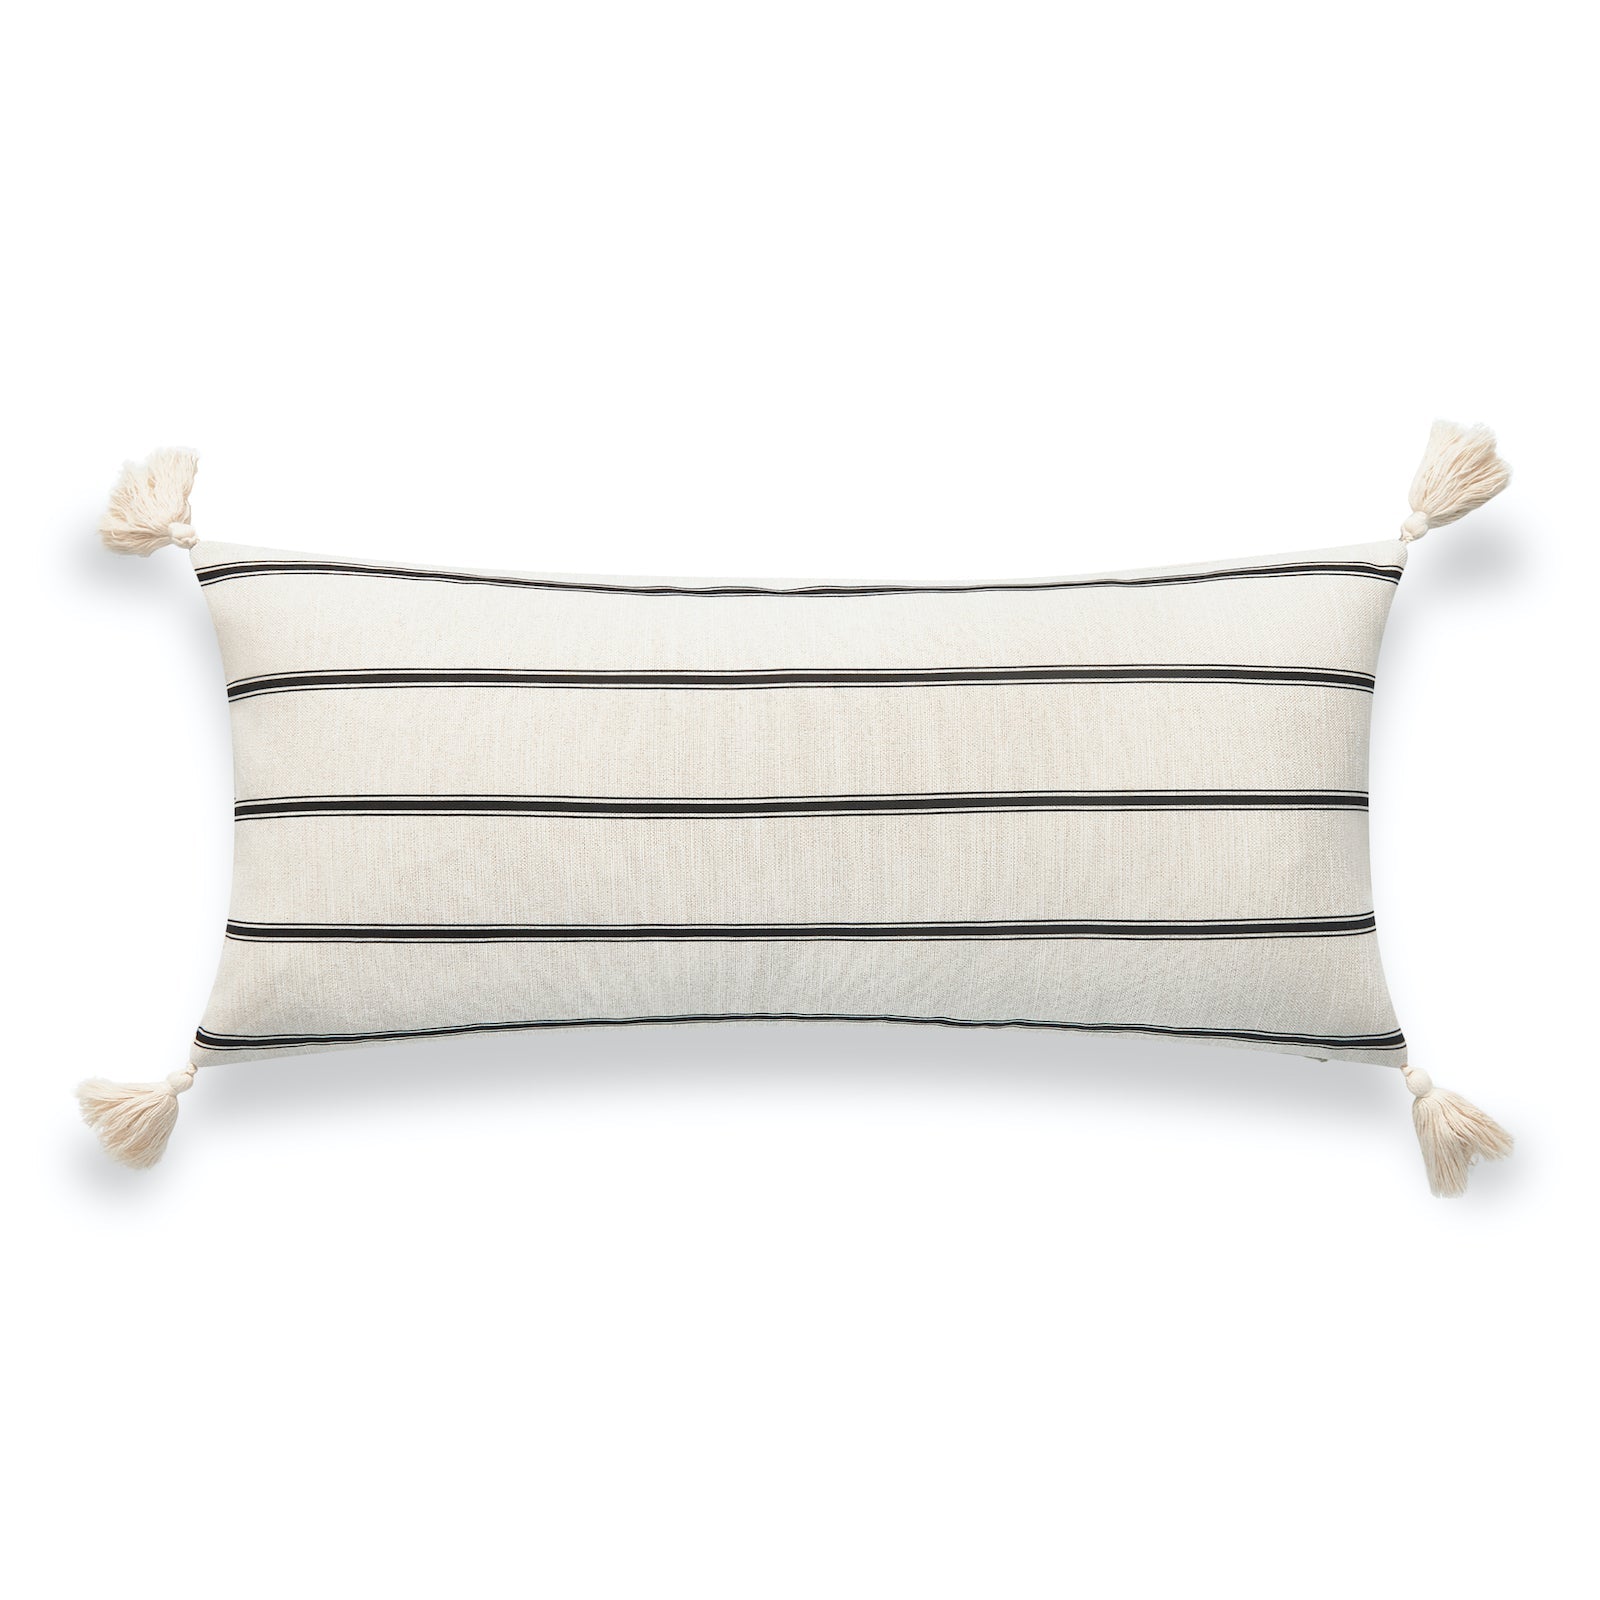 Modern Boho Outdoor Lumbar Pillow Cover, Striped Tassel, Beige, 12"x26"-0